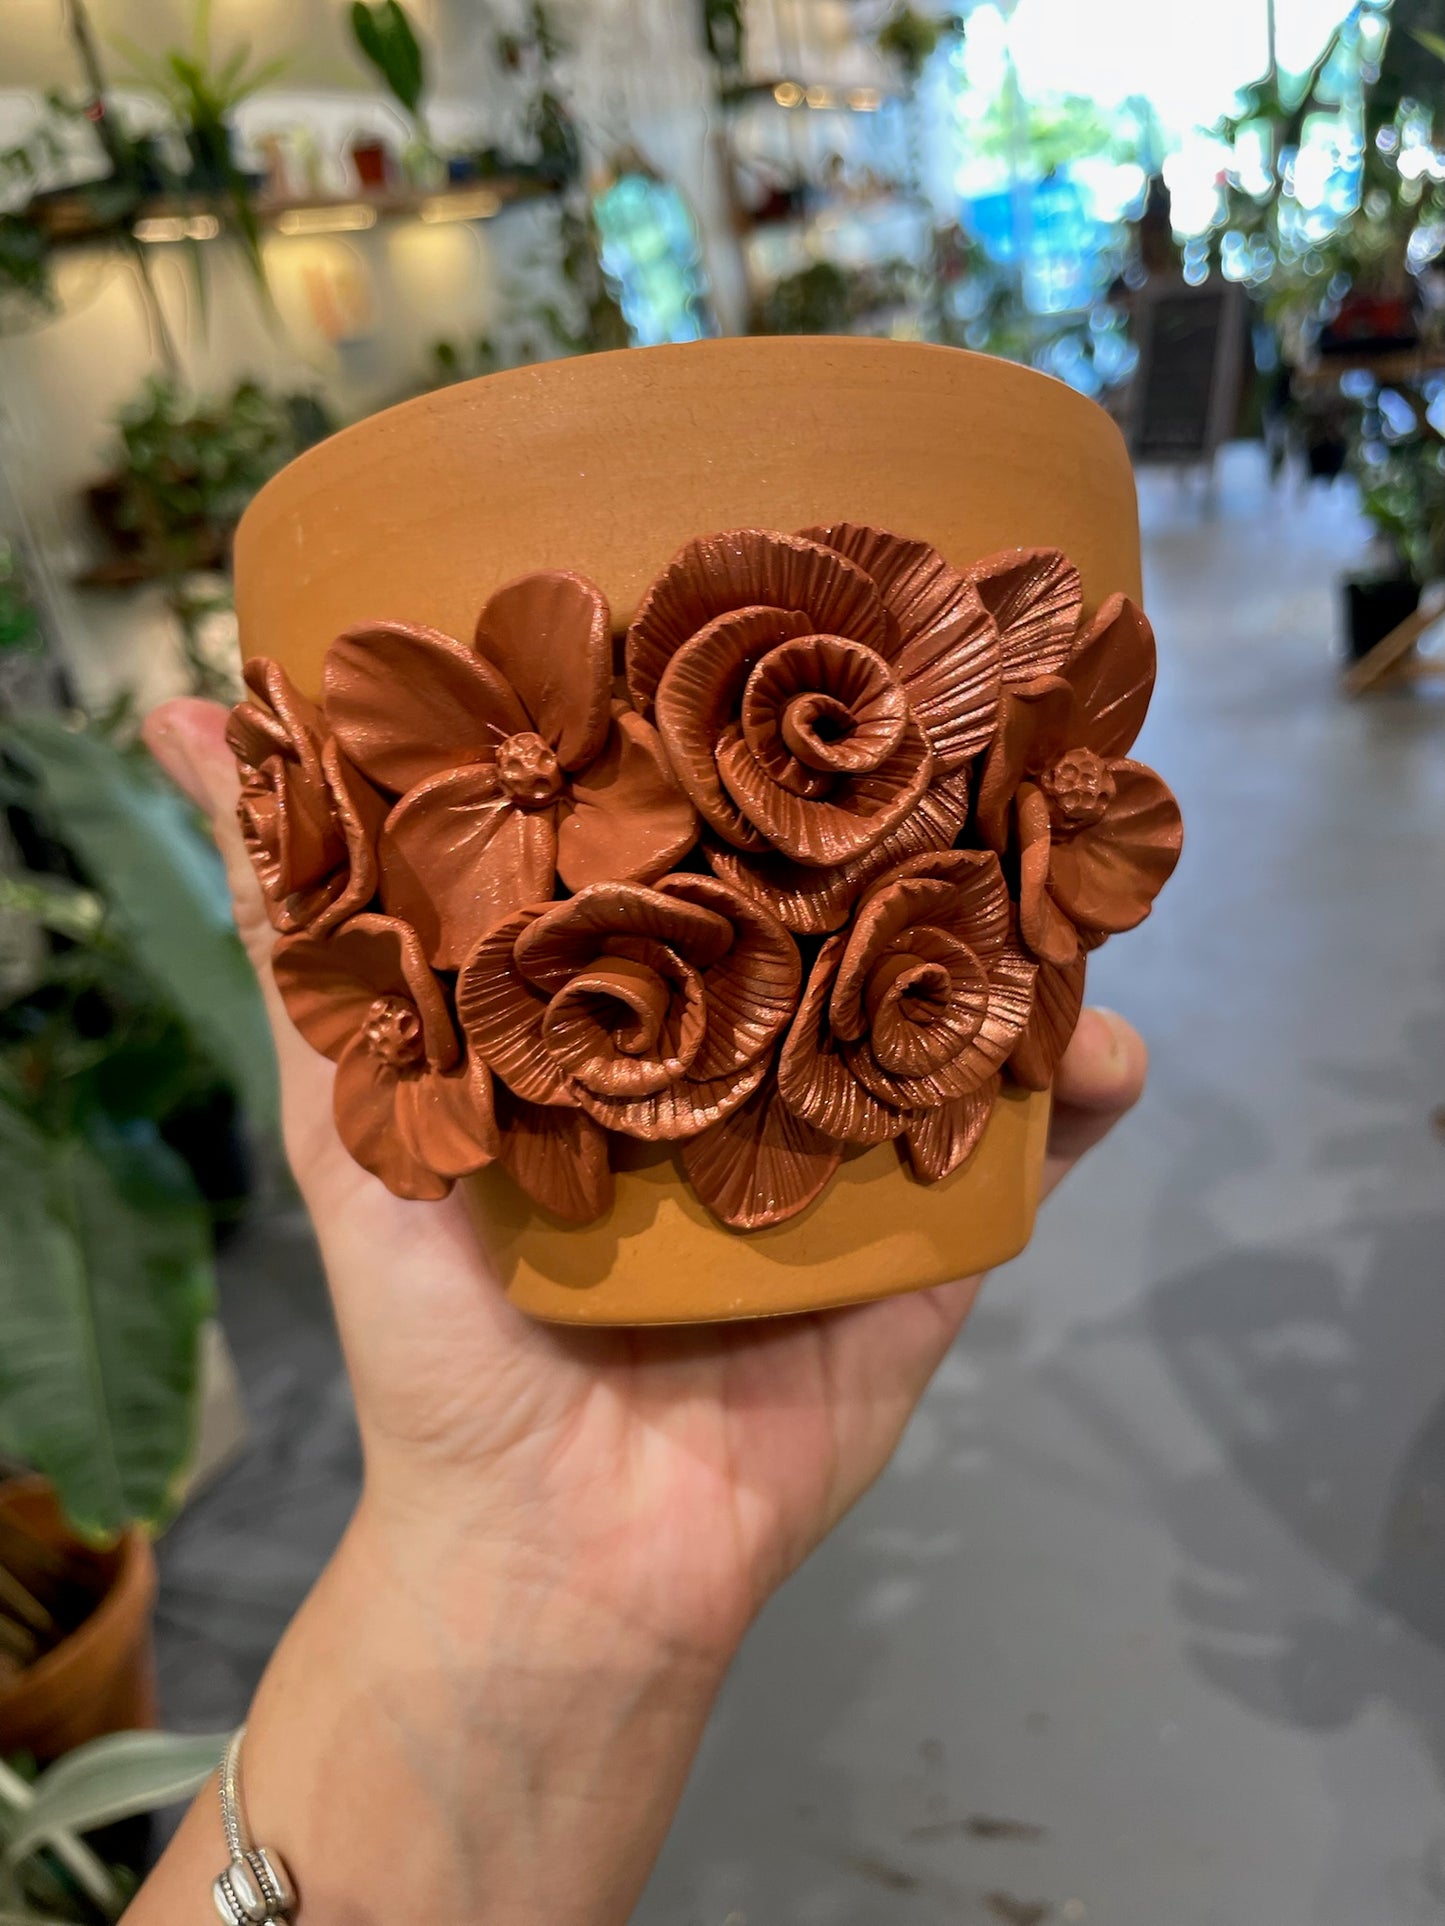 Custom Floral Pots